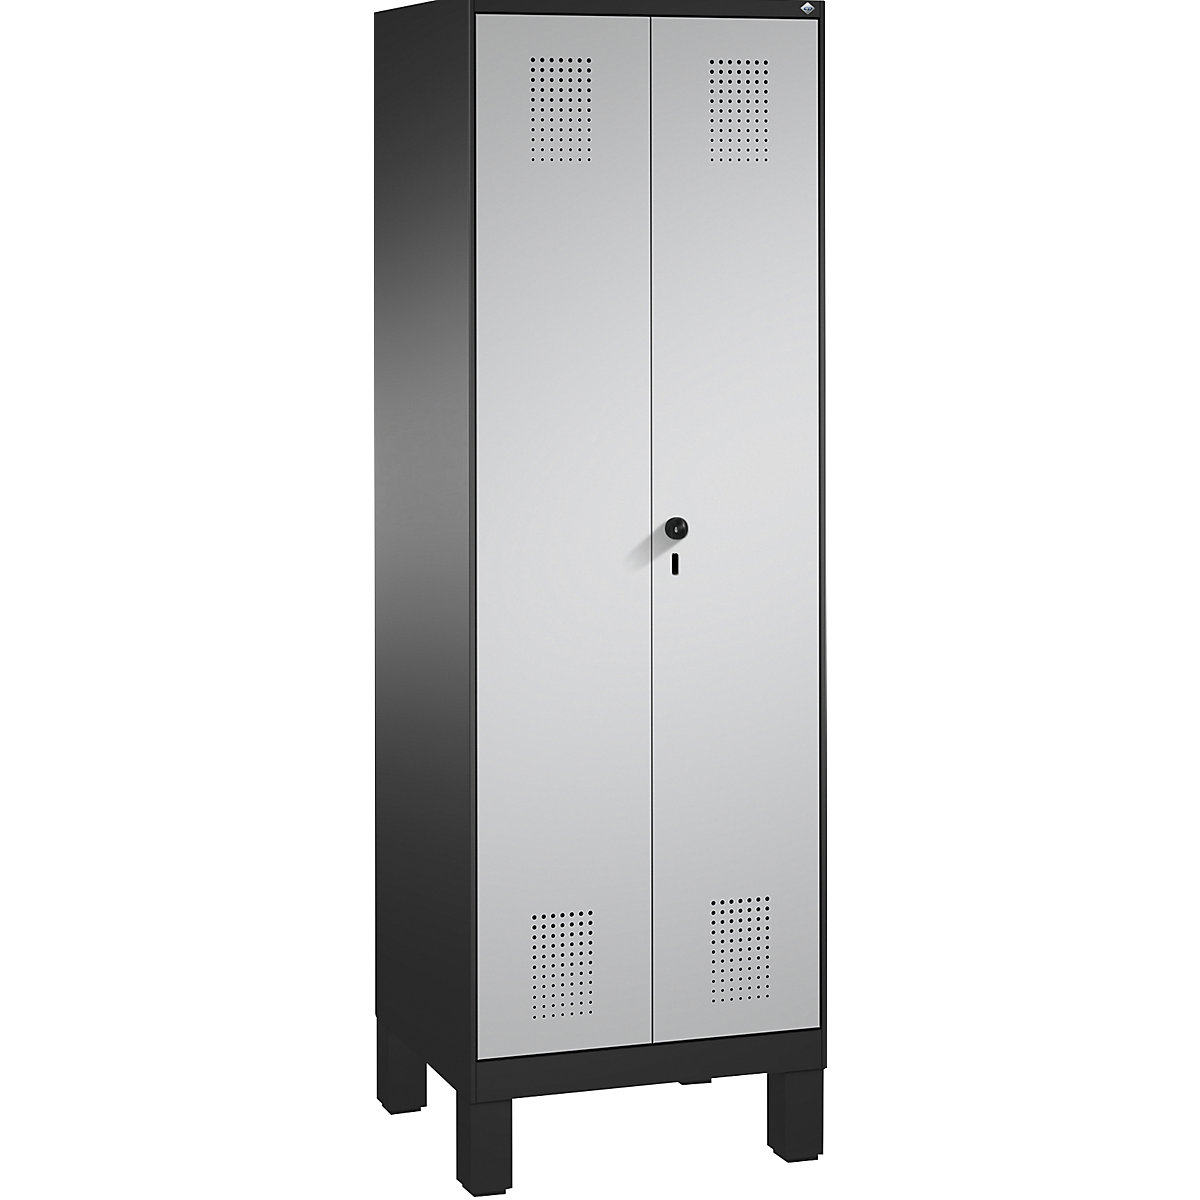 EVOLO tárolószekrény, egymásra csukódó ajtók, lábakkal – C+P, 1 fülke, szélesség 600 mm, 4 polccal, feketésszürke / fehéralumínium-12